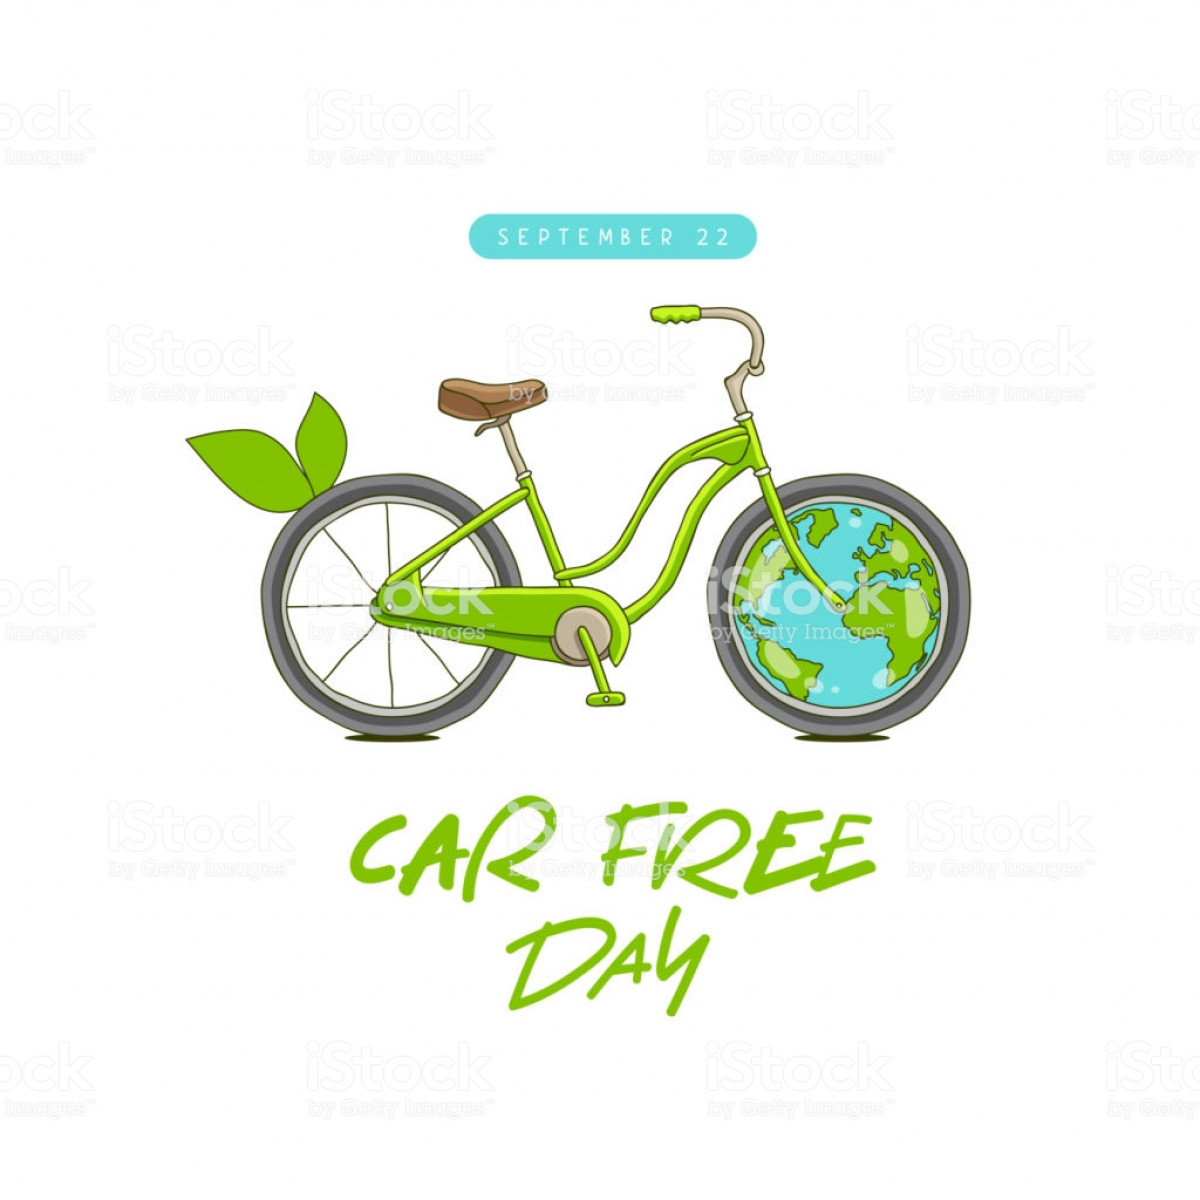 Indonesia Adalah Negara ASEAN Pertama yang Menerapkan Car Free Day